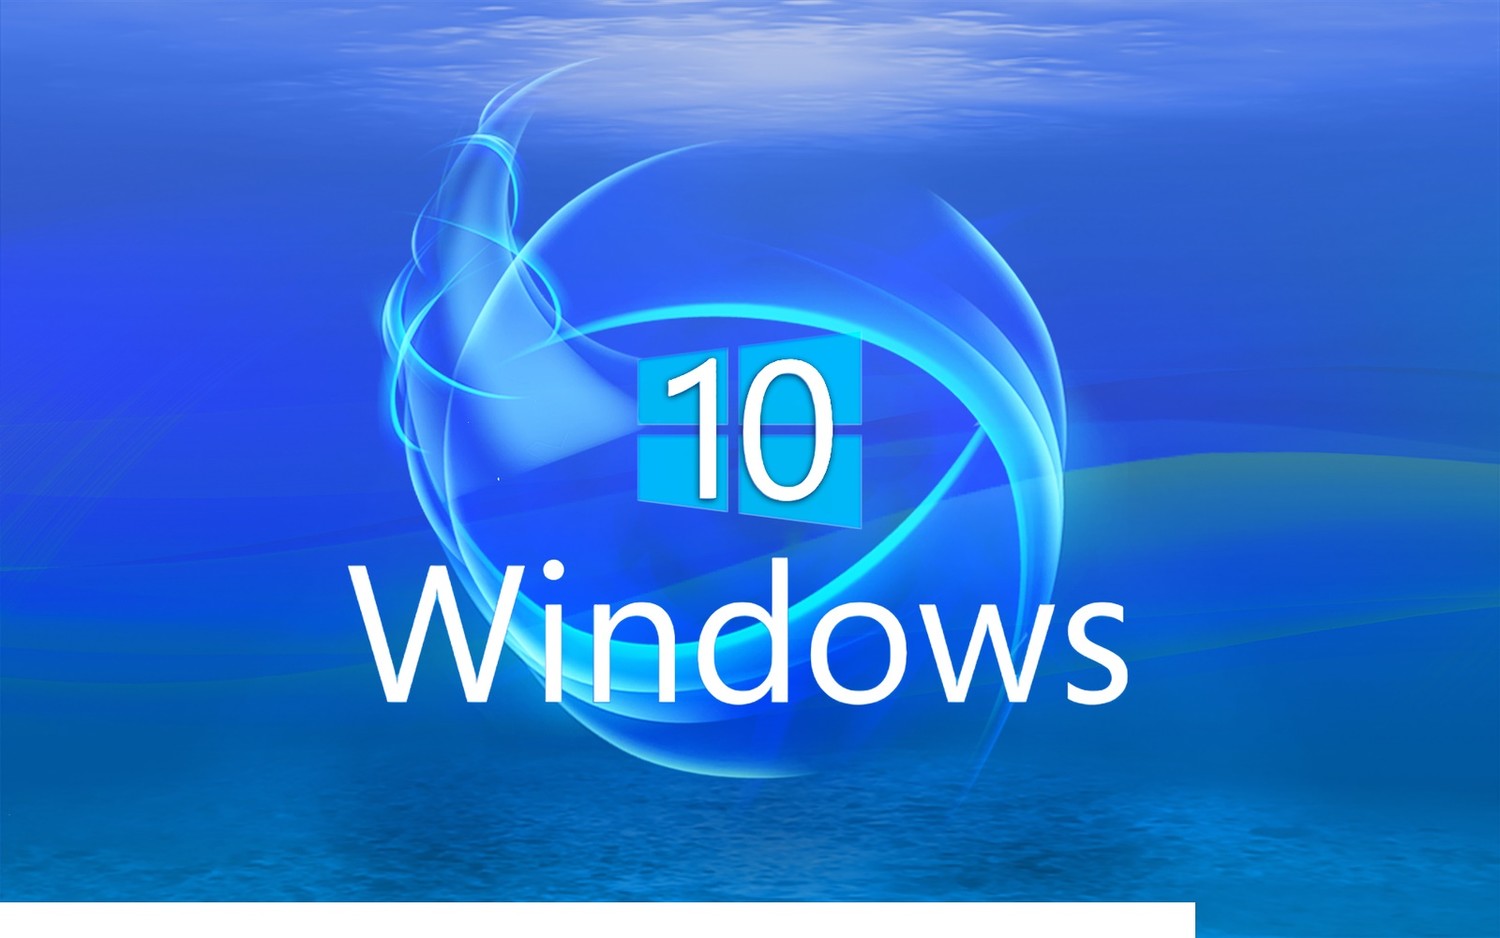 Бесплатное обновление до Windows 10 - после 29 июля 2016